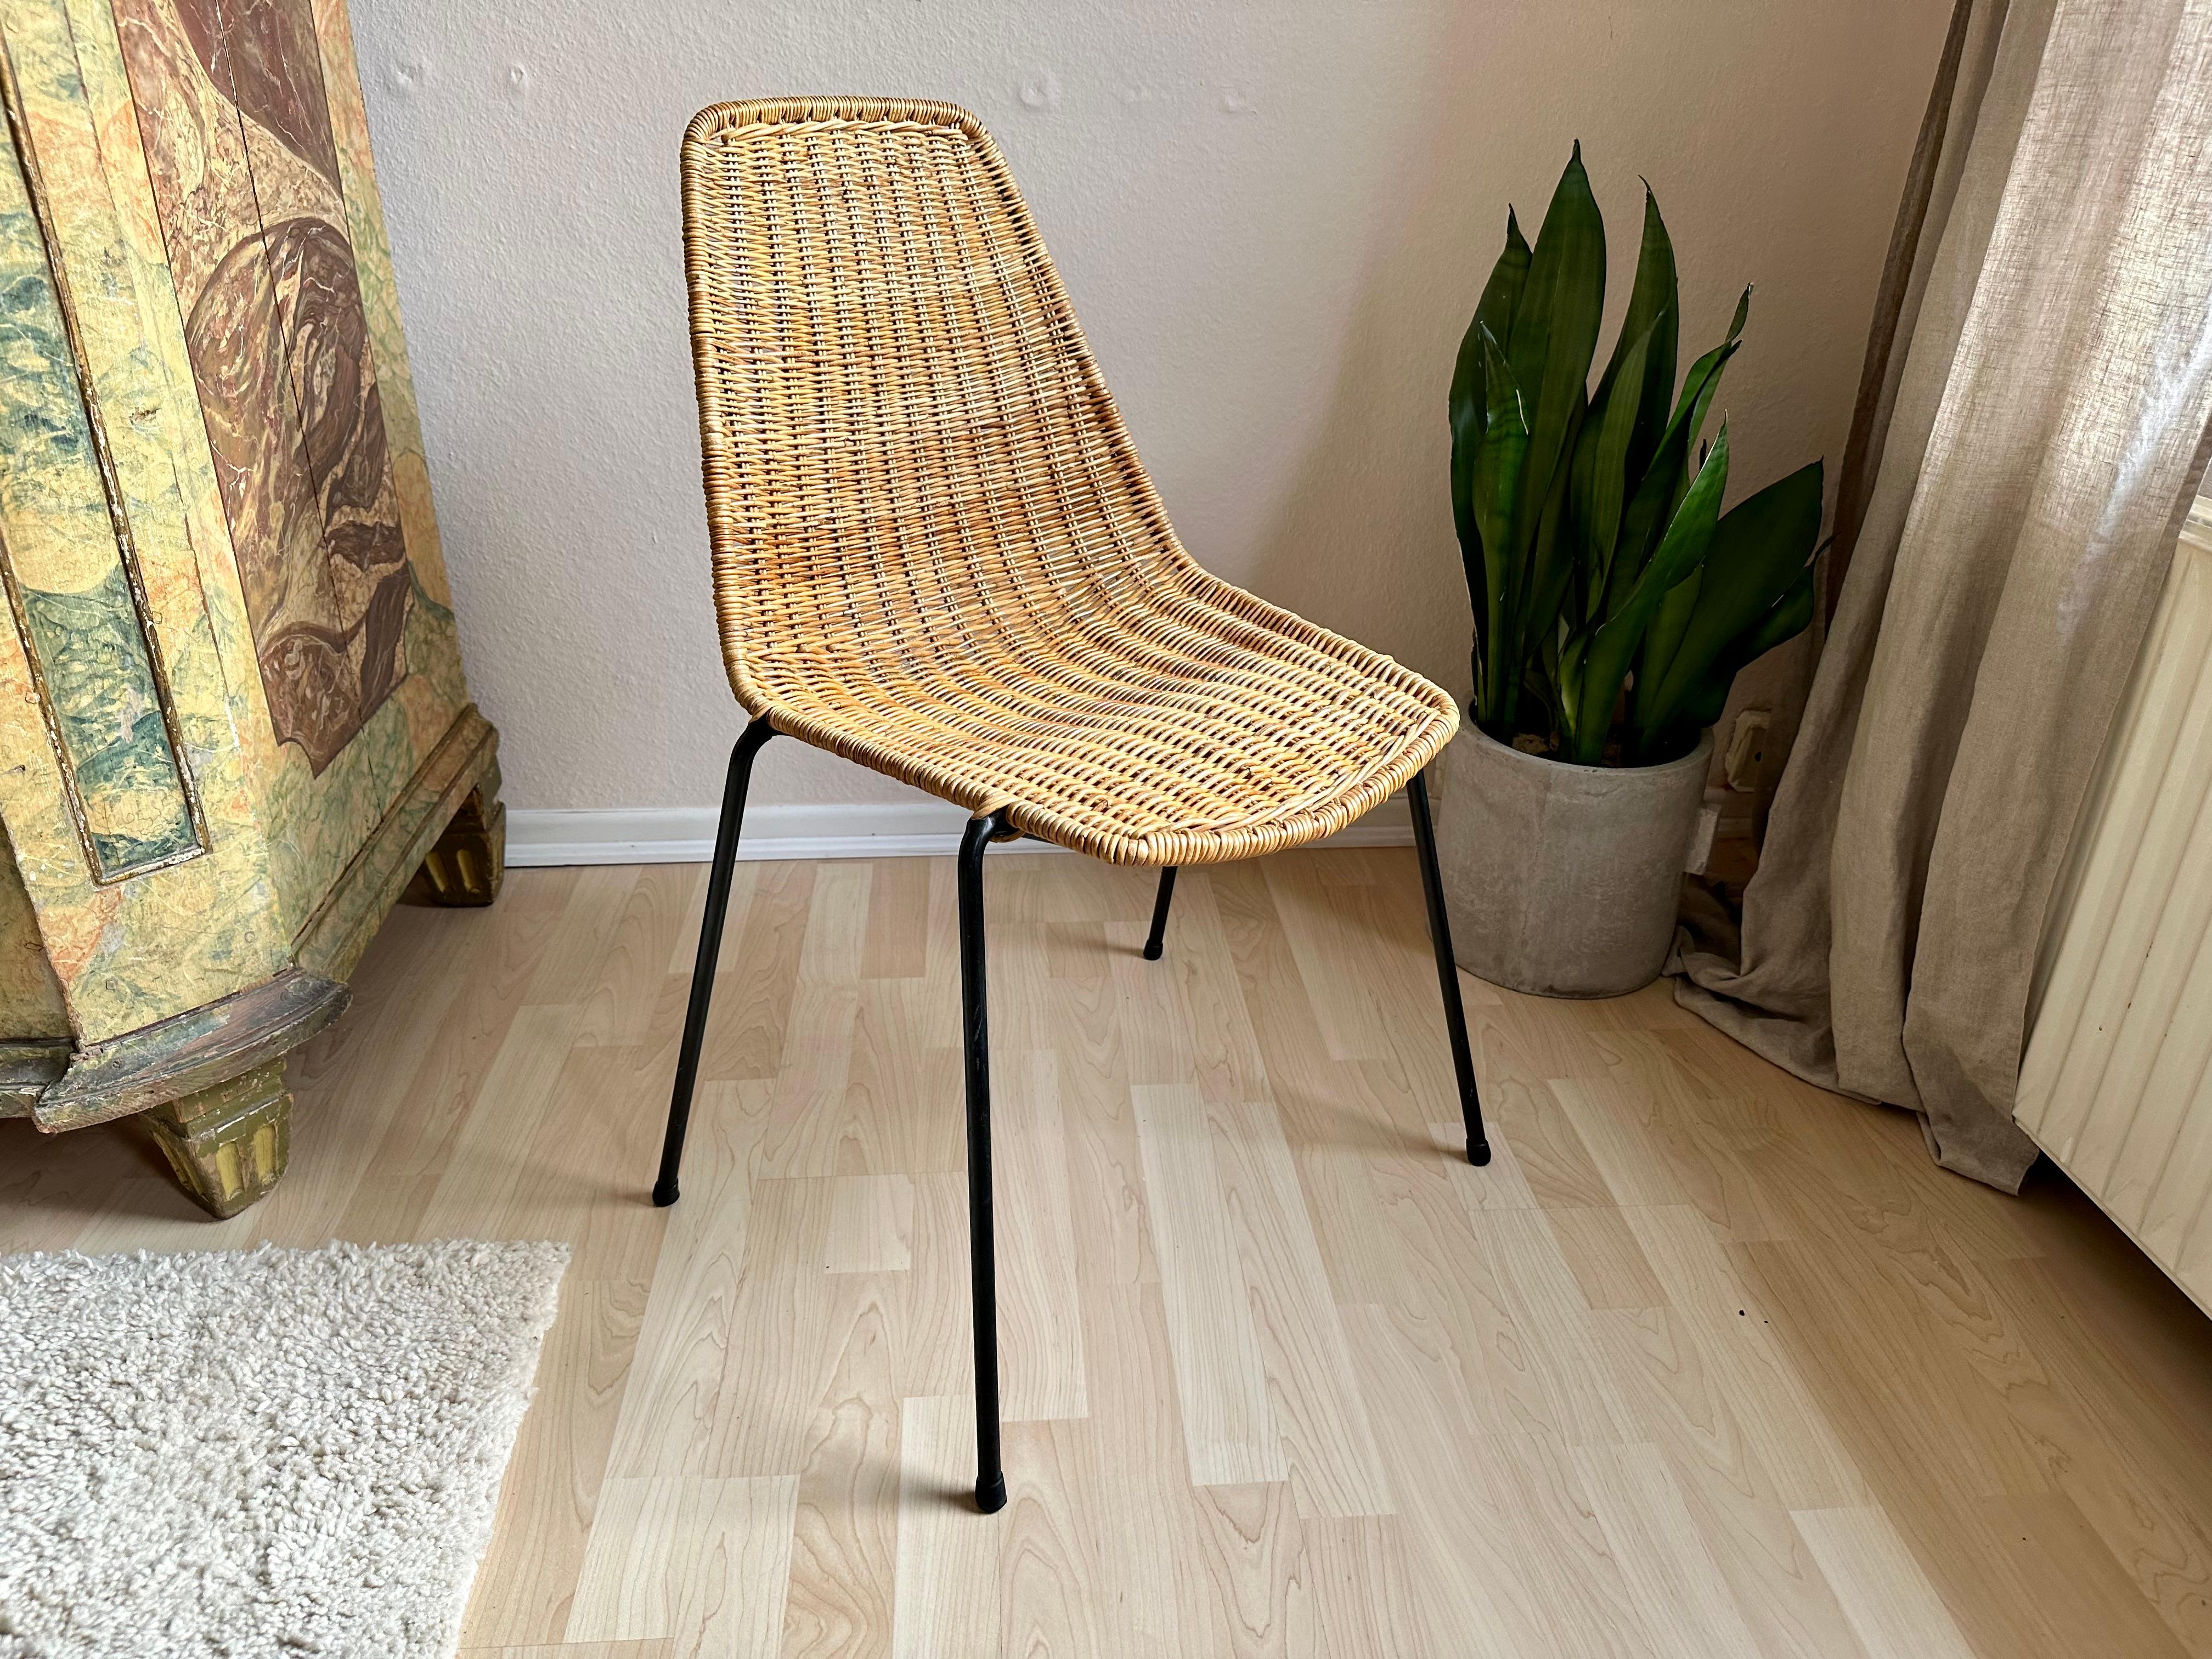 Der Basket Chair des Designers Gian Franco Legler ist ein Meisterwerk, das aus exquisitem Rattan gefertigt ist. Gian Franco Legler, bekannt für seine innovativen Entwürfe, verbindet in diesem einzigartigen Stück nahtlos Komfort und Stil. Mit seinem